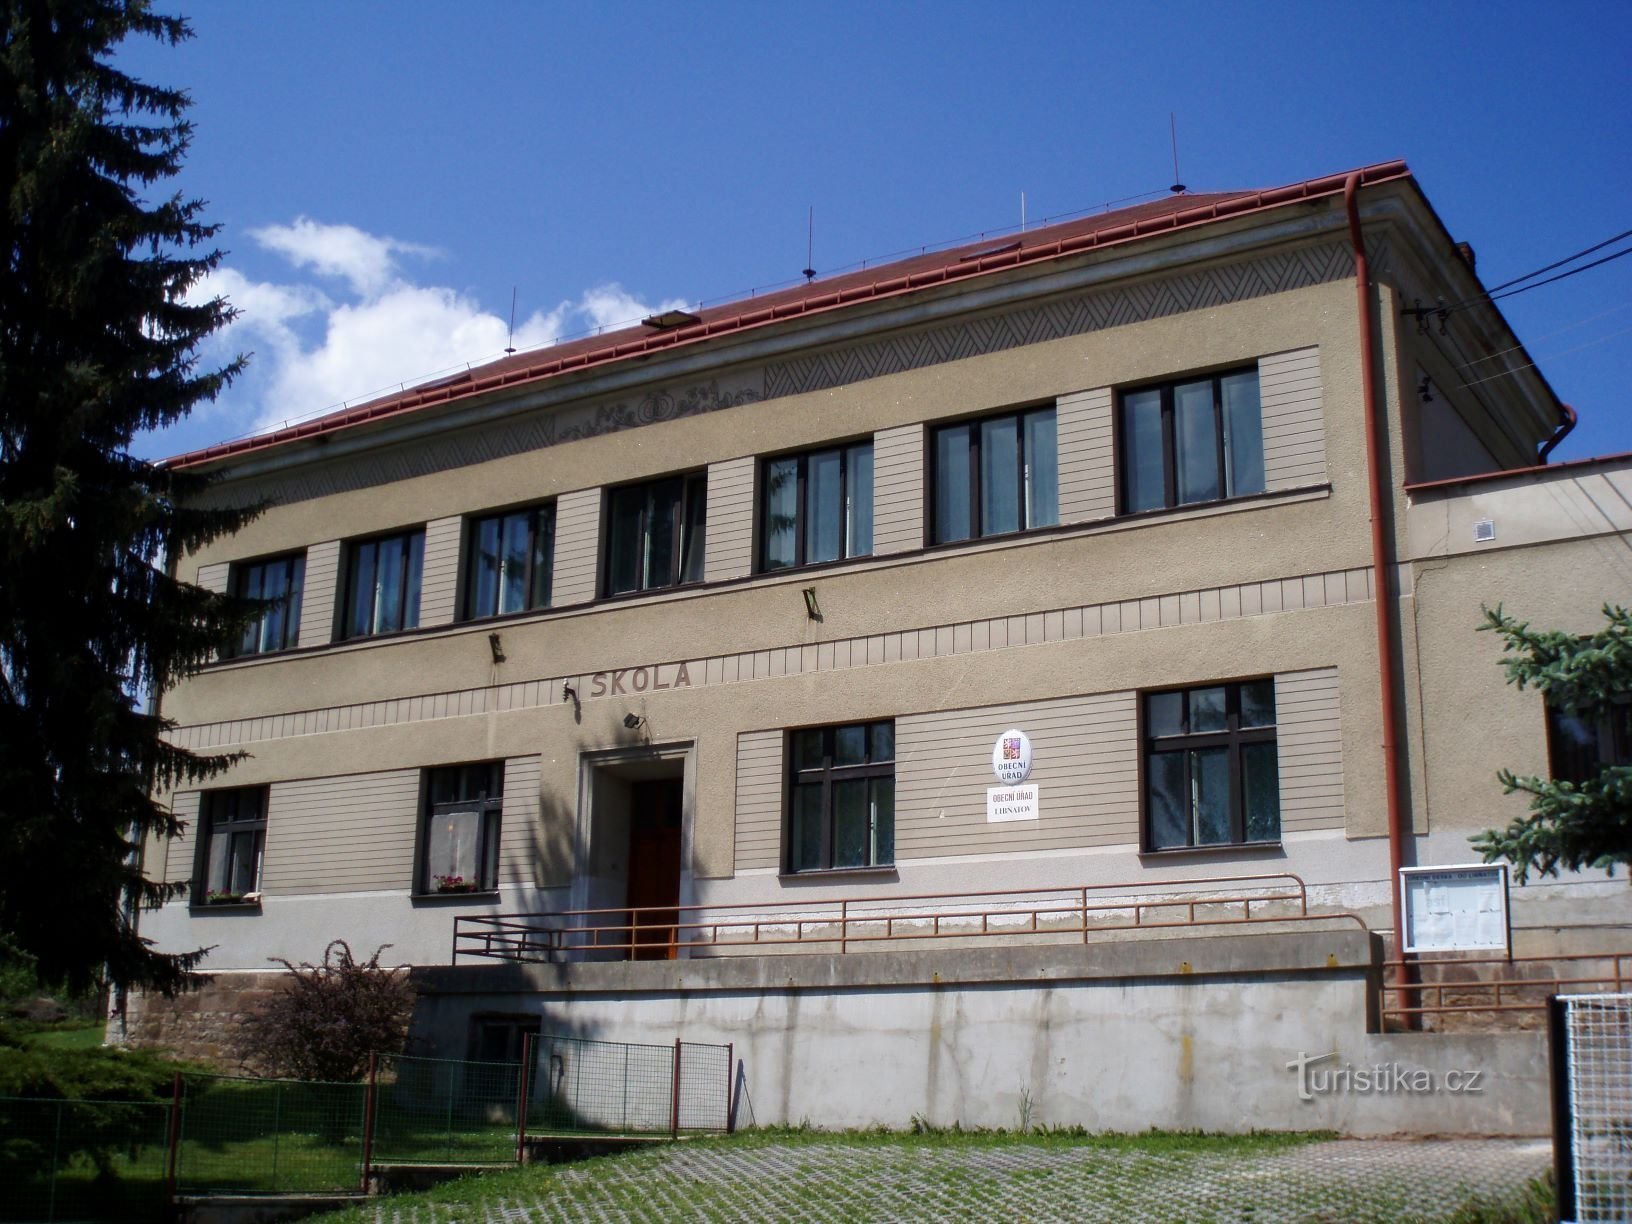 A mai önkormányzati hivatal eredeti megjelenése (Libňatov, 12.5.2009.)